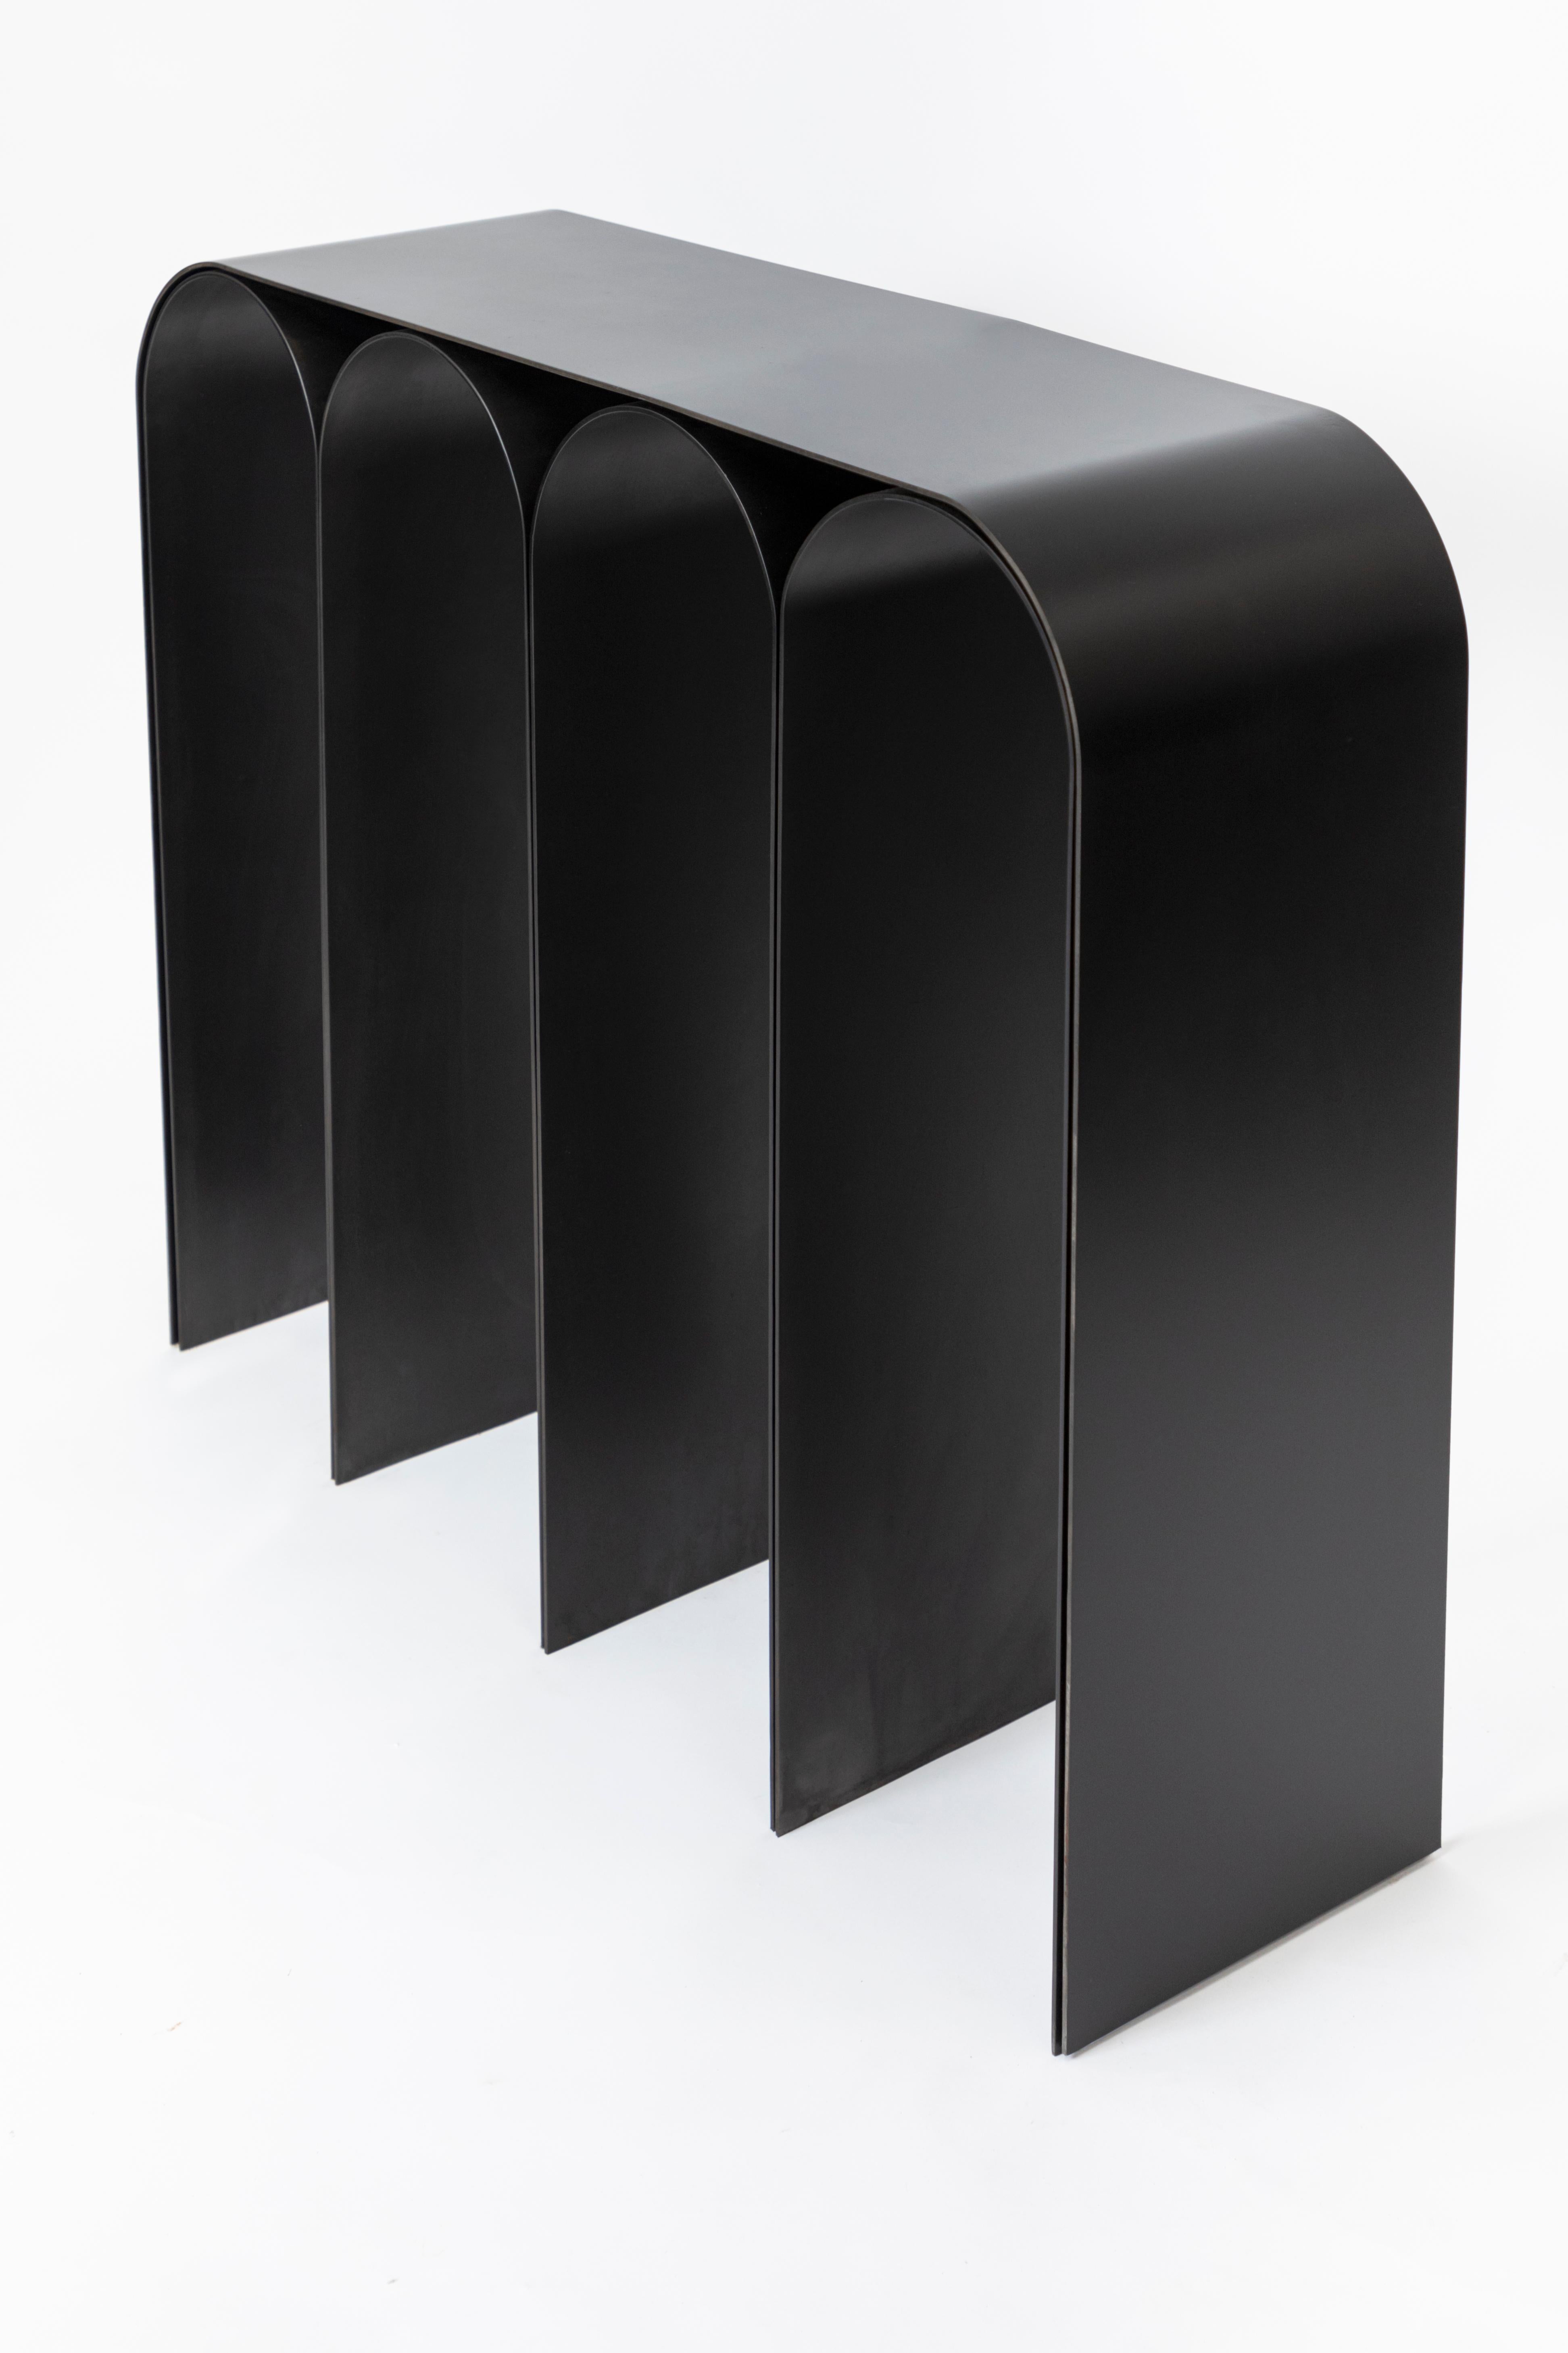 Contemporary Black Arch Console by Pietro Franceschini